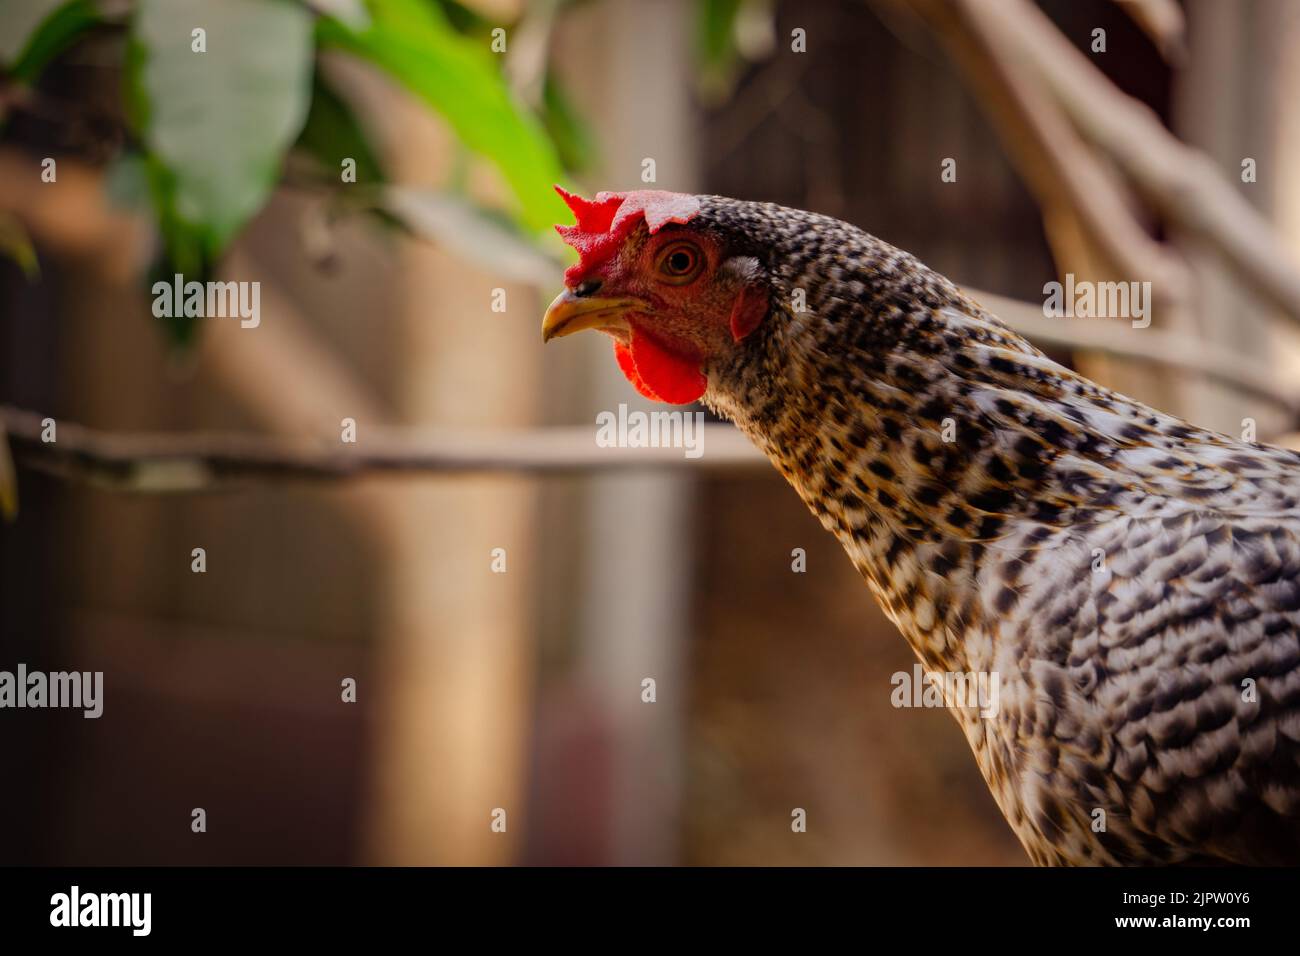 Un pollo grande mirando hacia arriba. Imagen de cerca de un pollo grande. Estos polluelos se encuentran en las aldeas y colinas de Bangladesh. Foto de stock